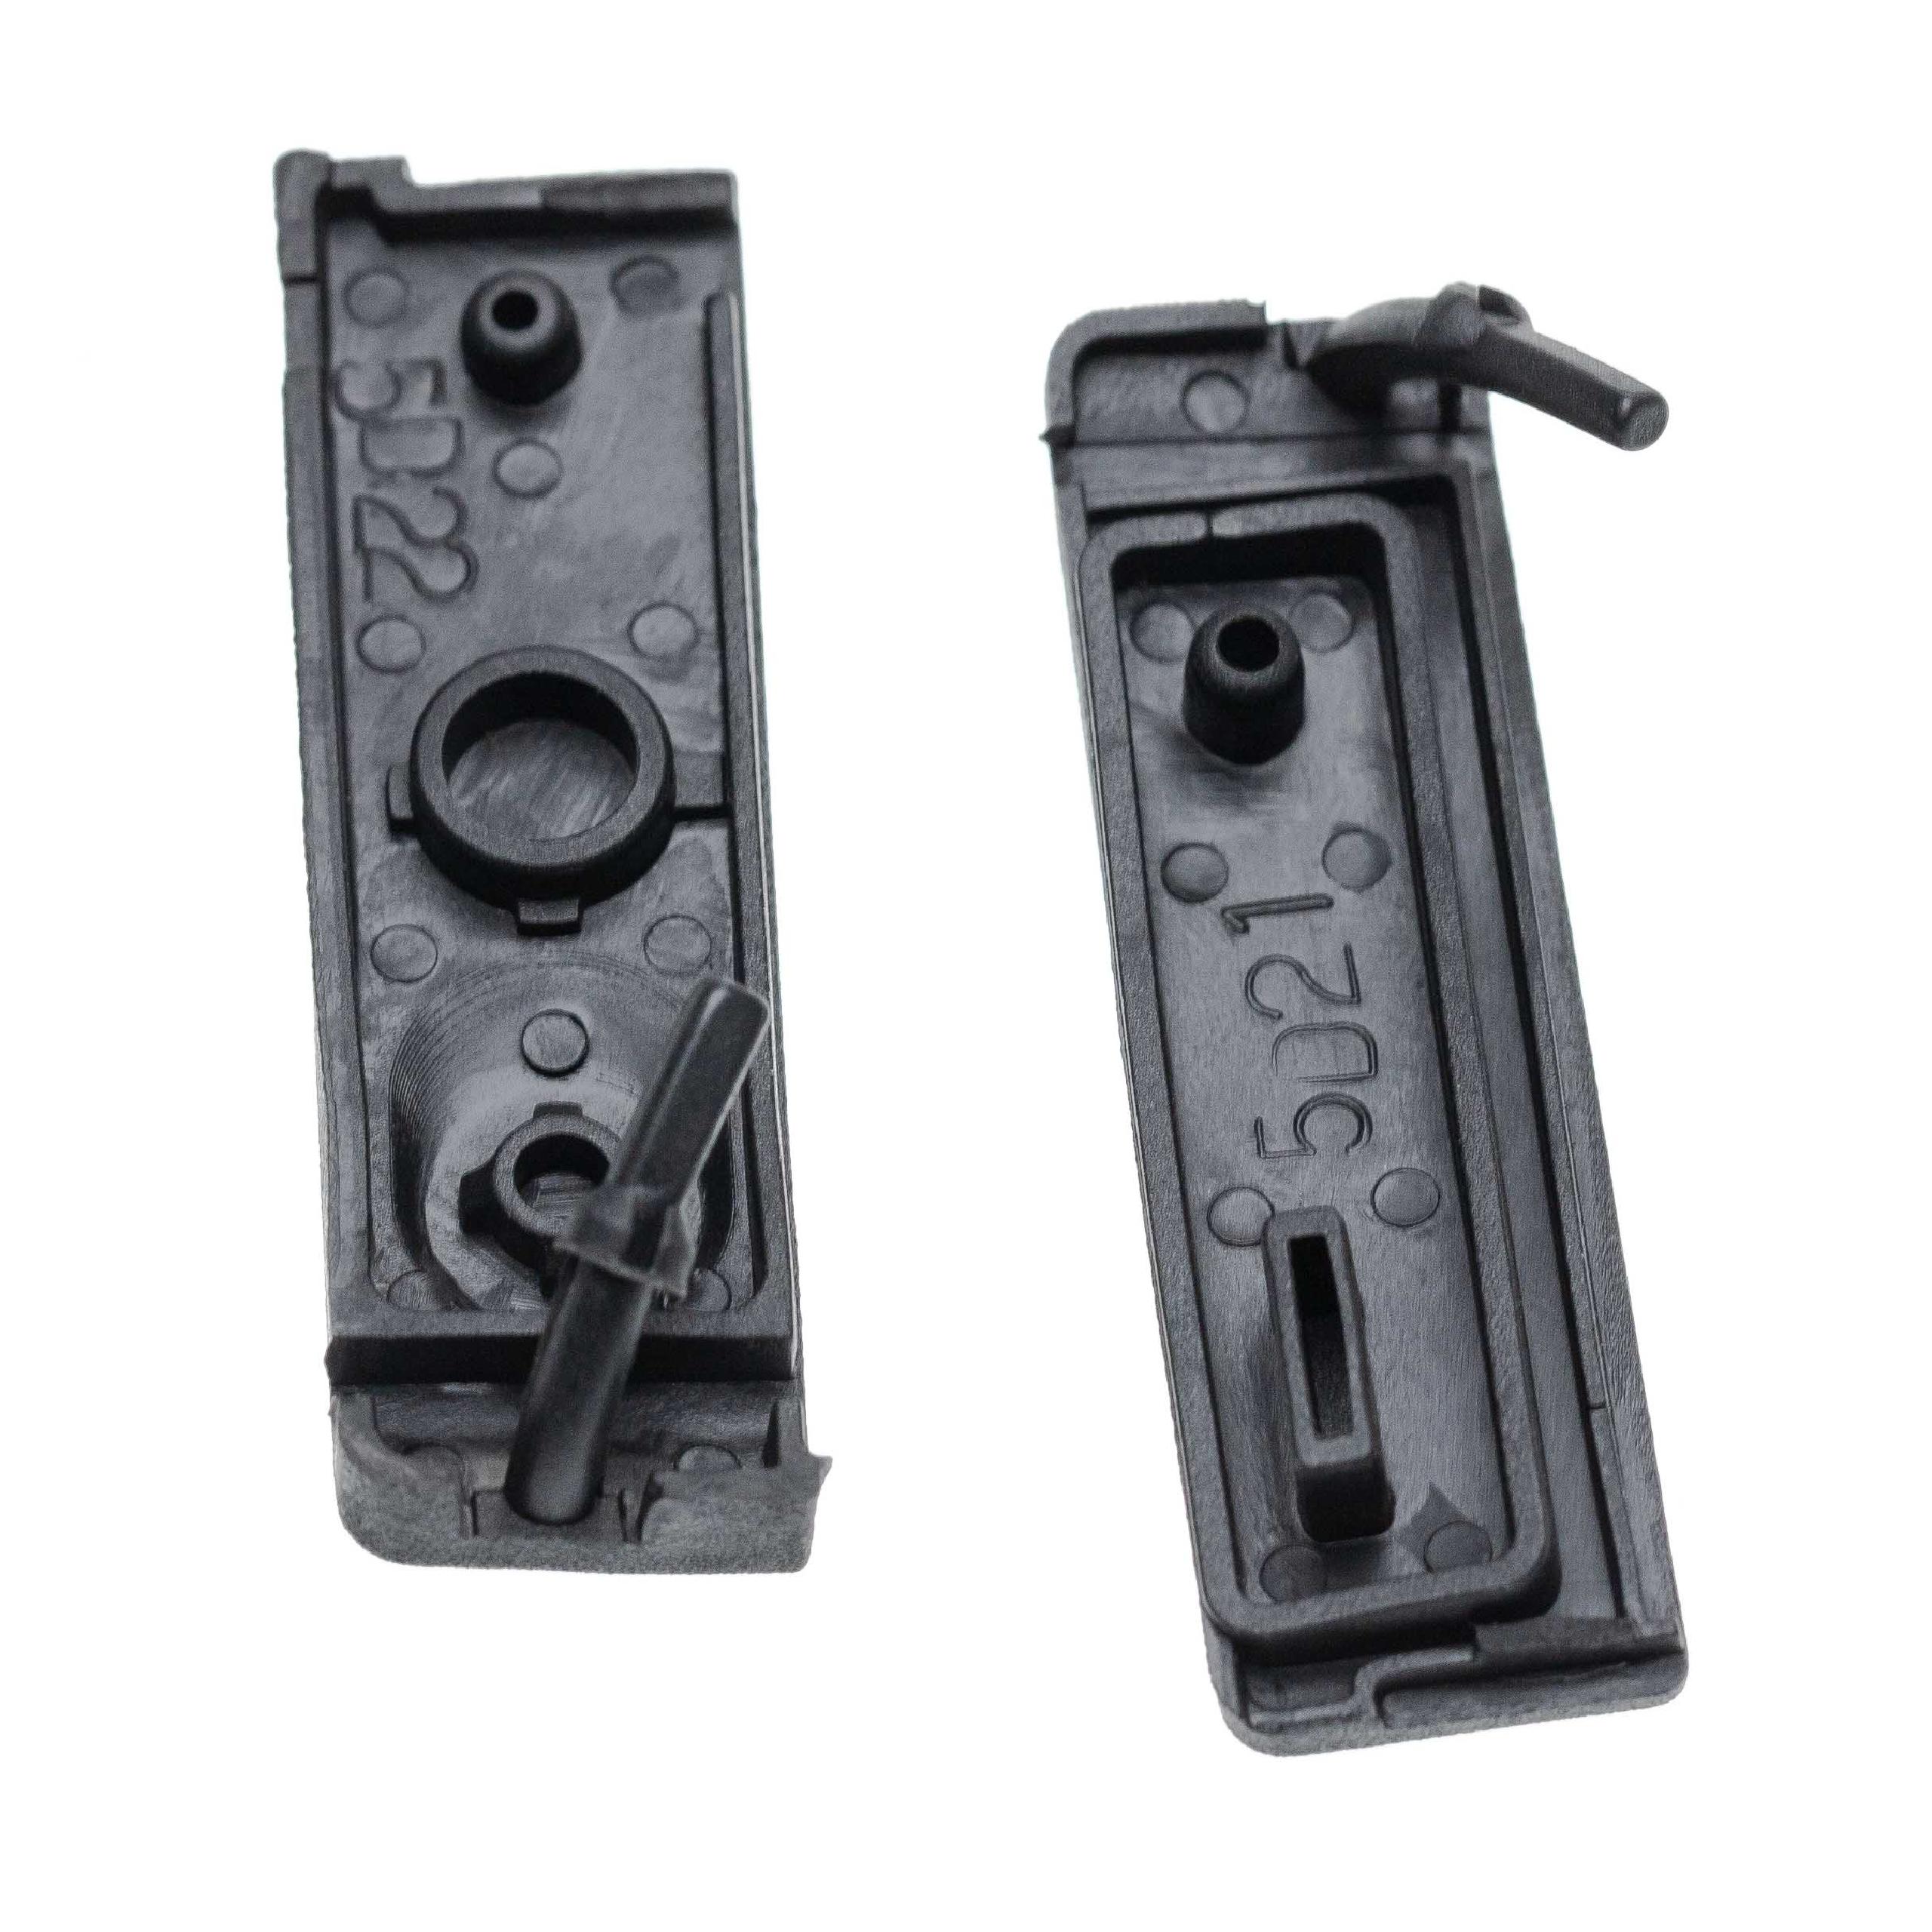 2x Cache-connecteurs pour appareil photo Canon EOS 5D Mark II - Capuchons de rechange, gomme, noir